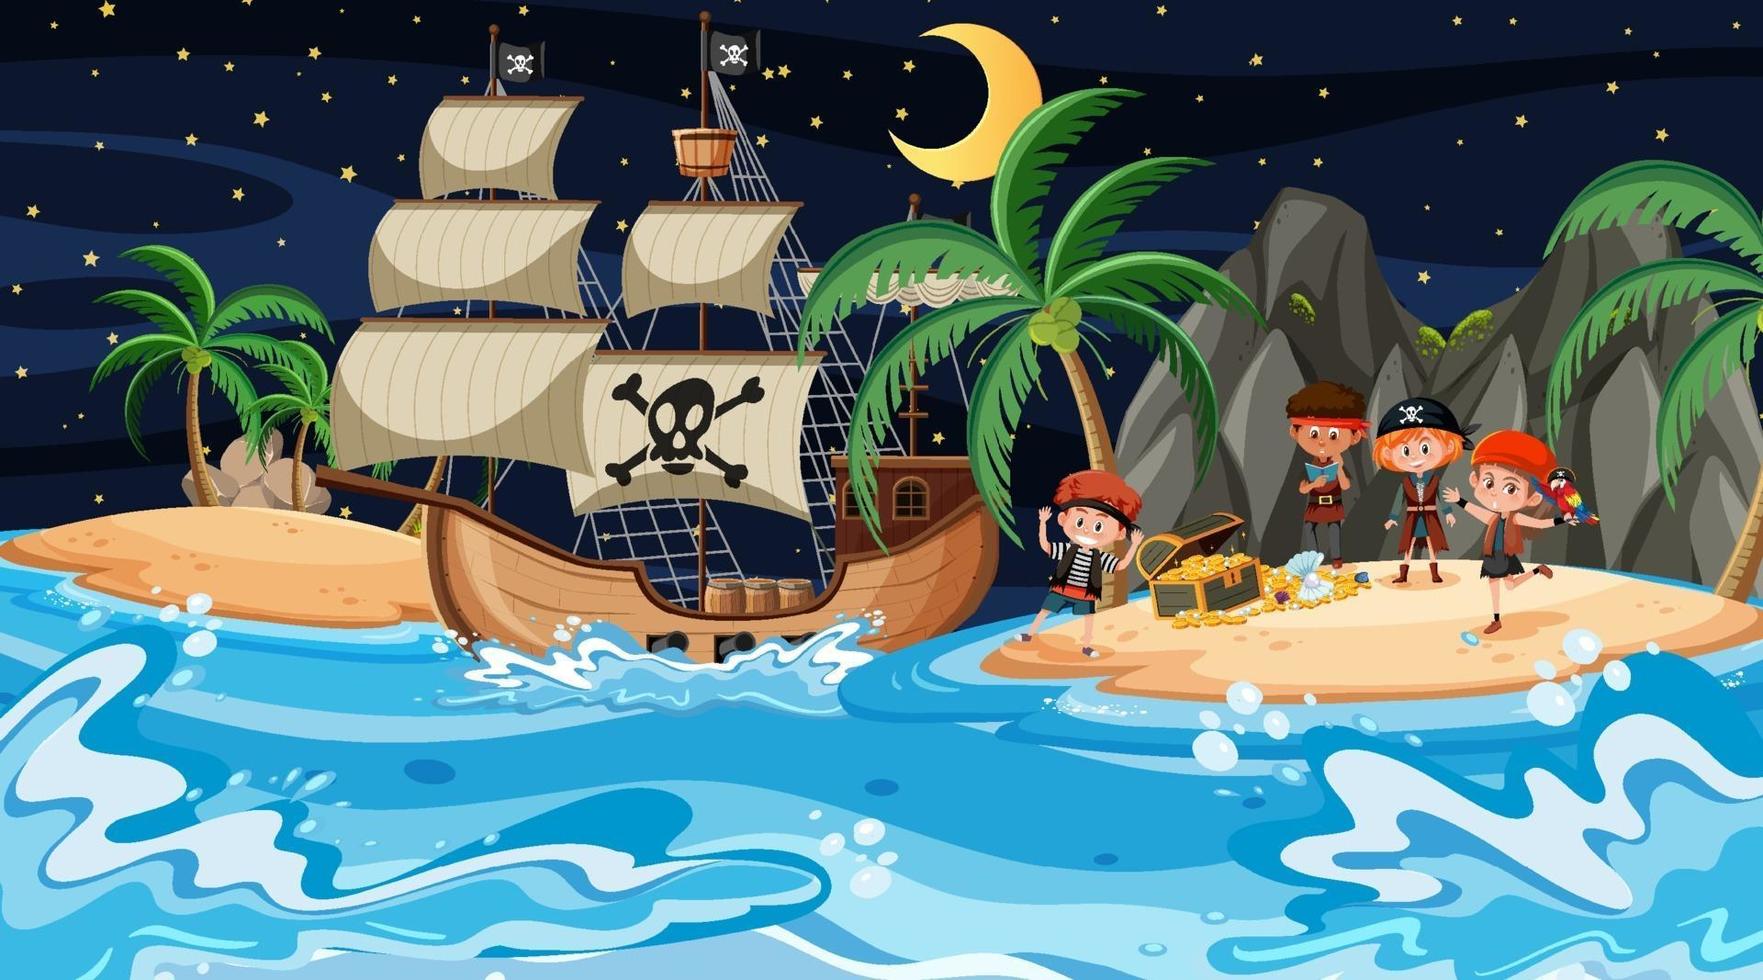 escena de la isla del tesoro en la noche con niños piratas vector